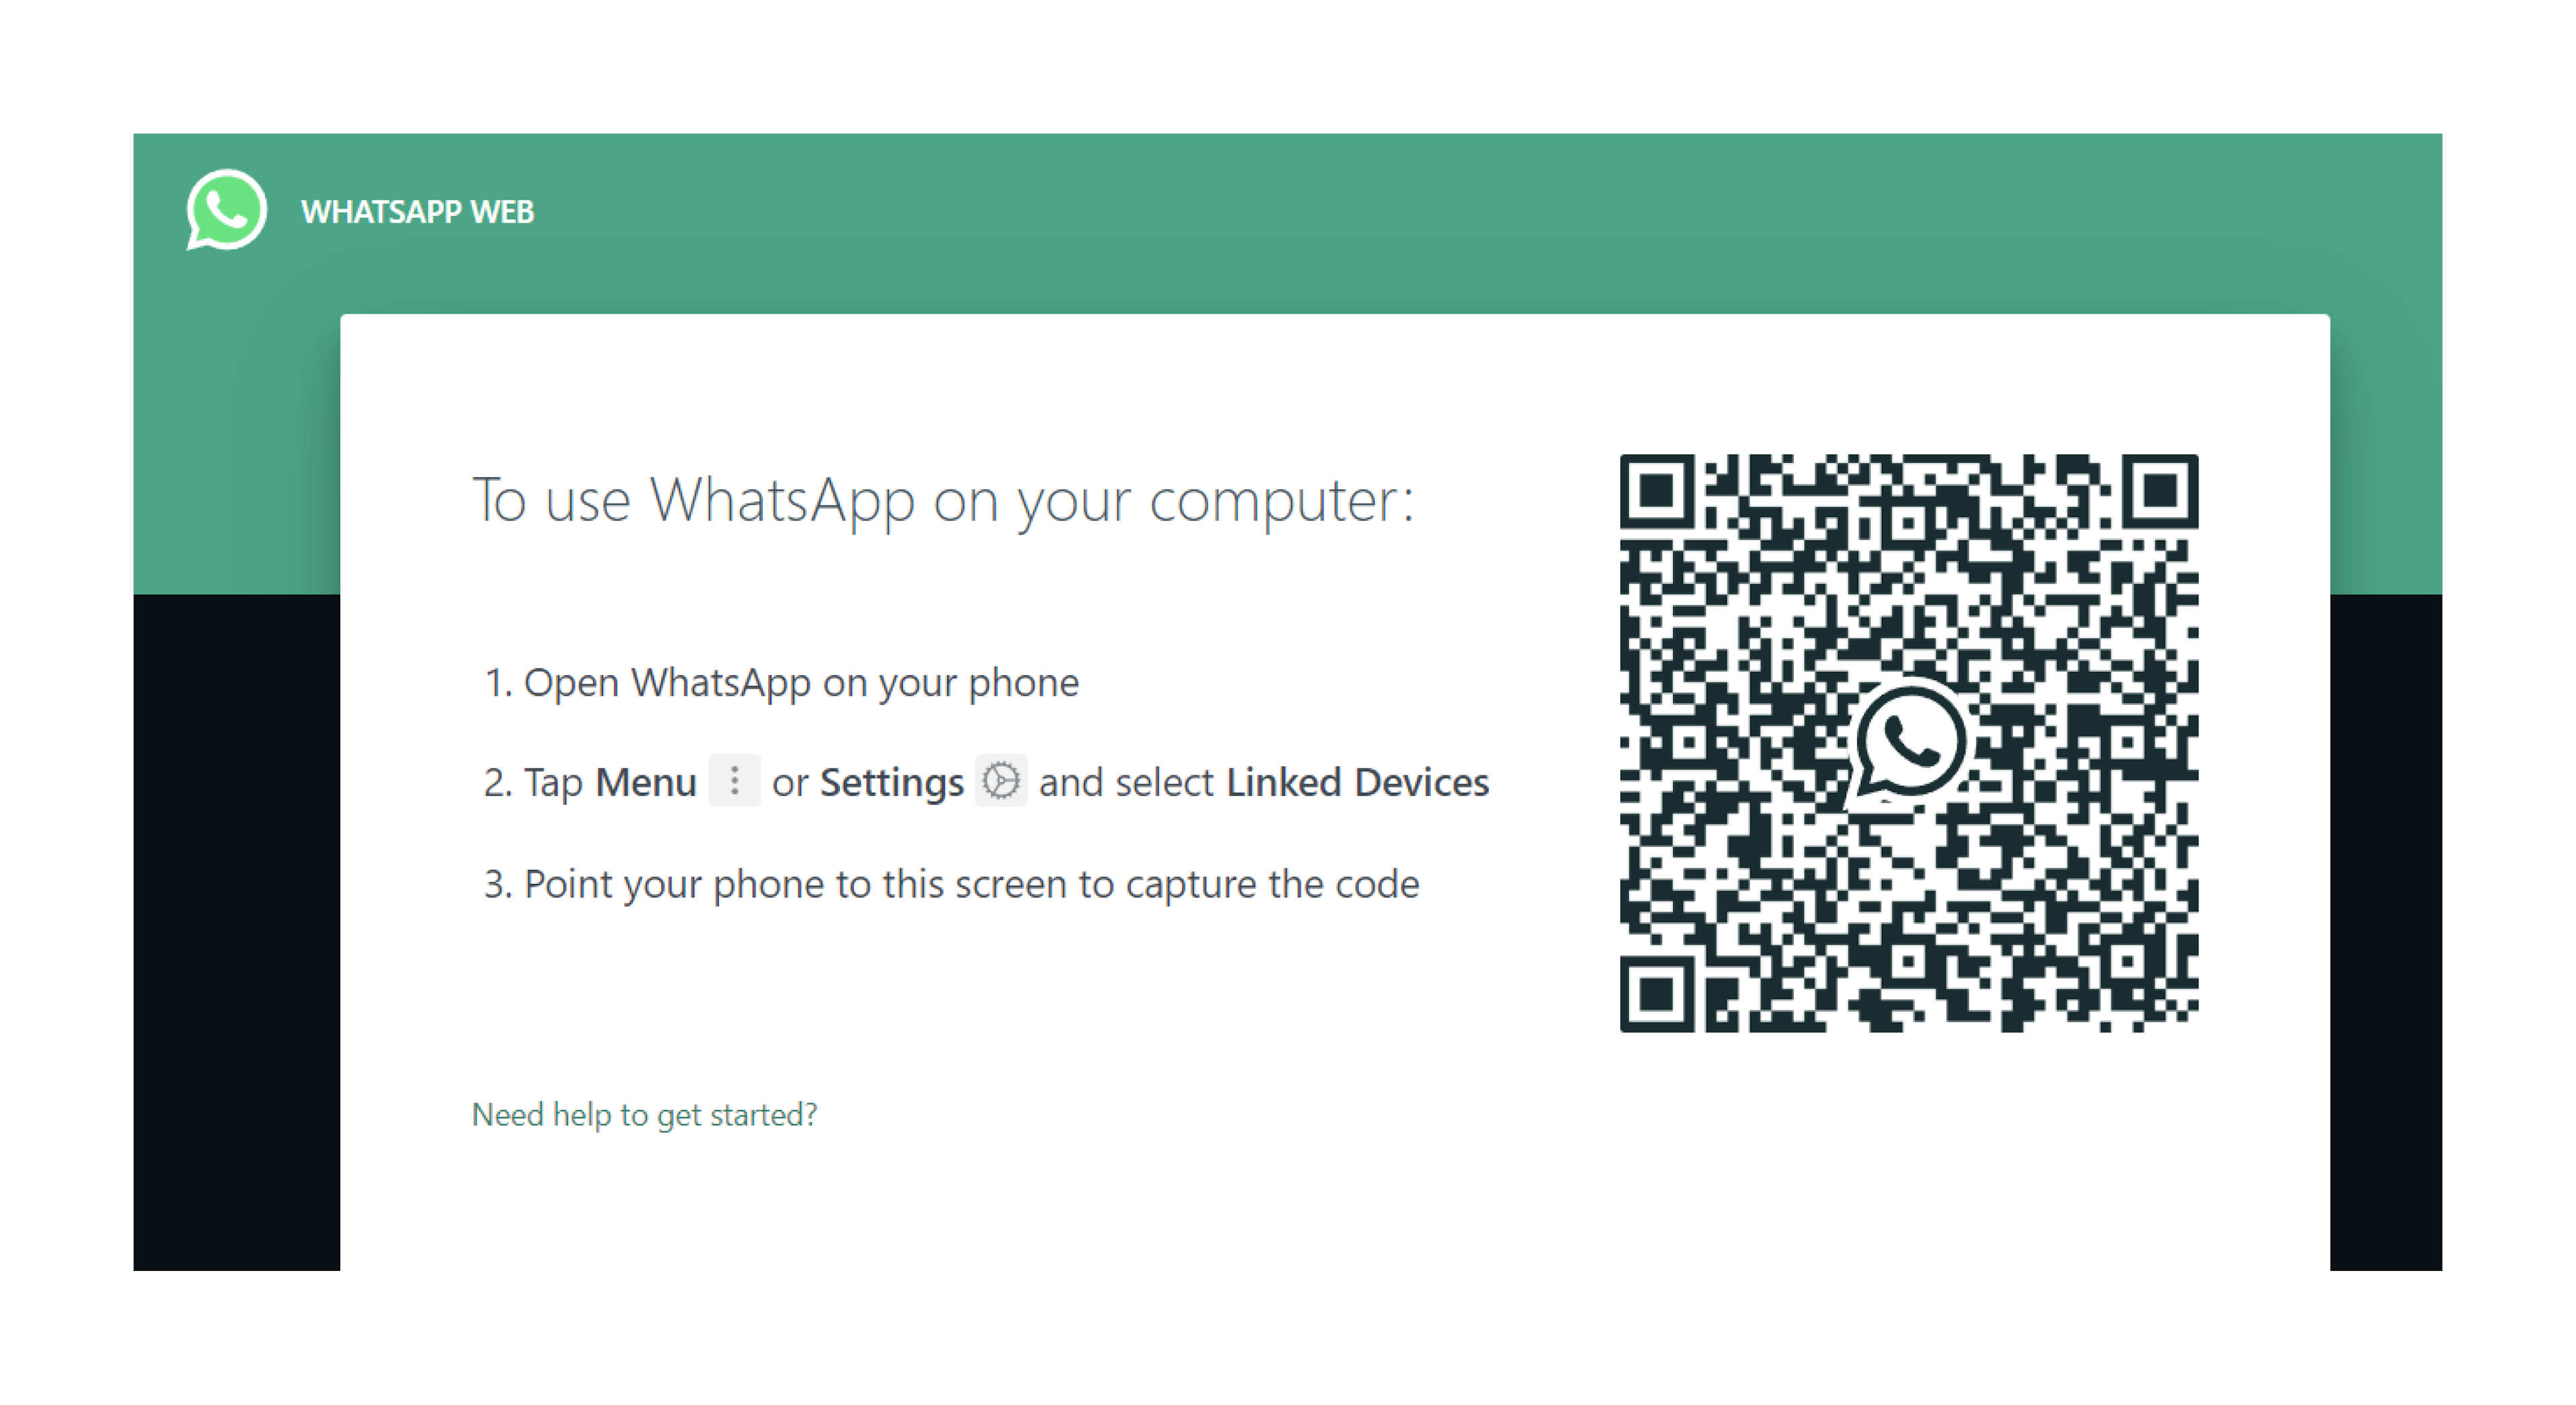 WhatsApp web login from desktop